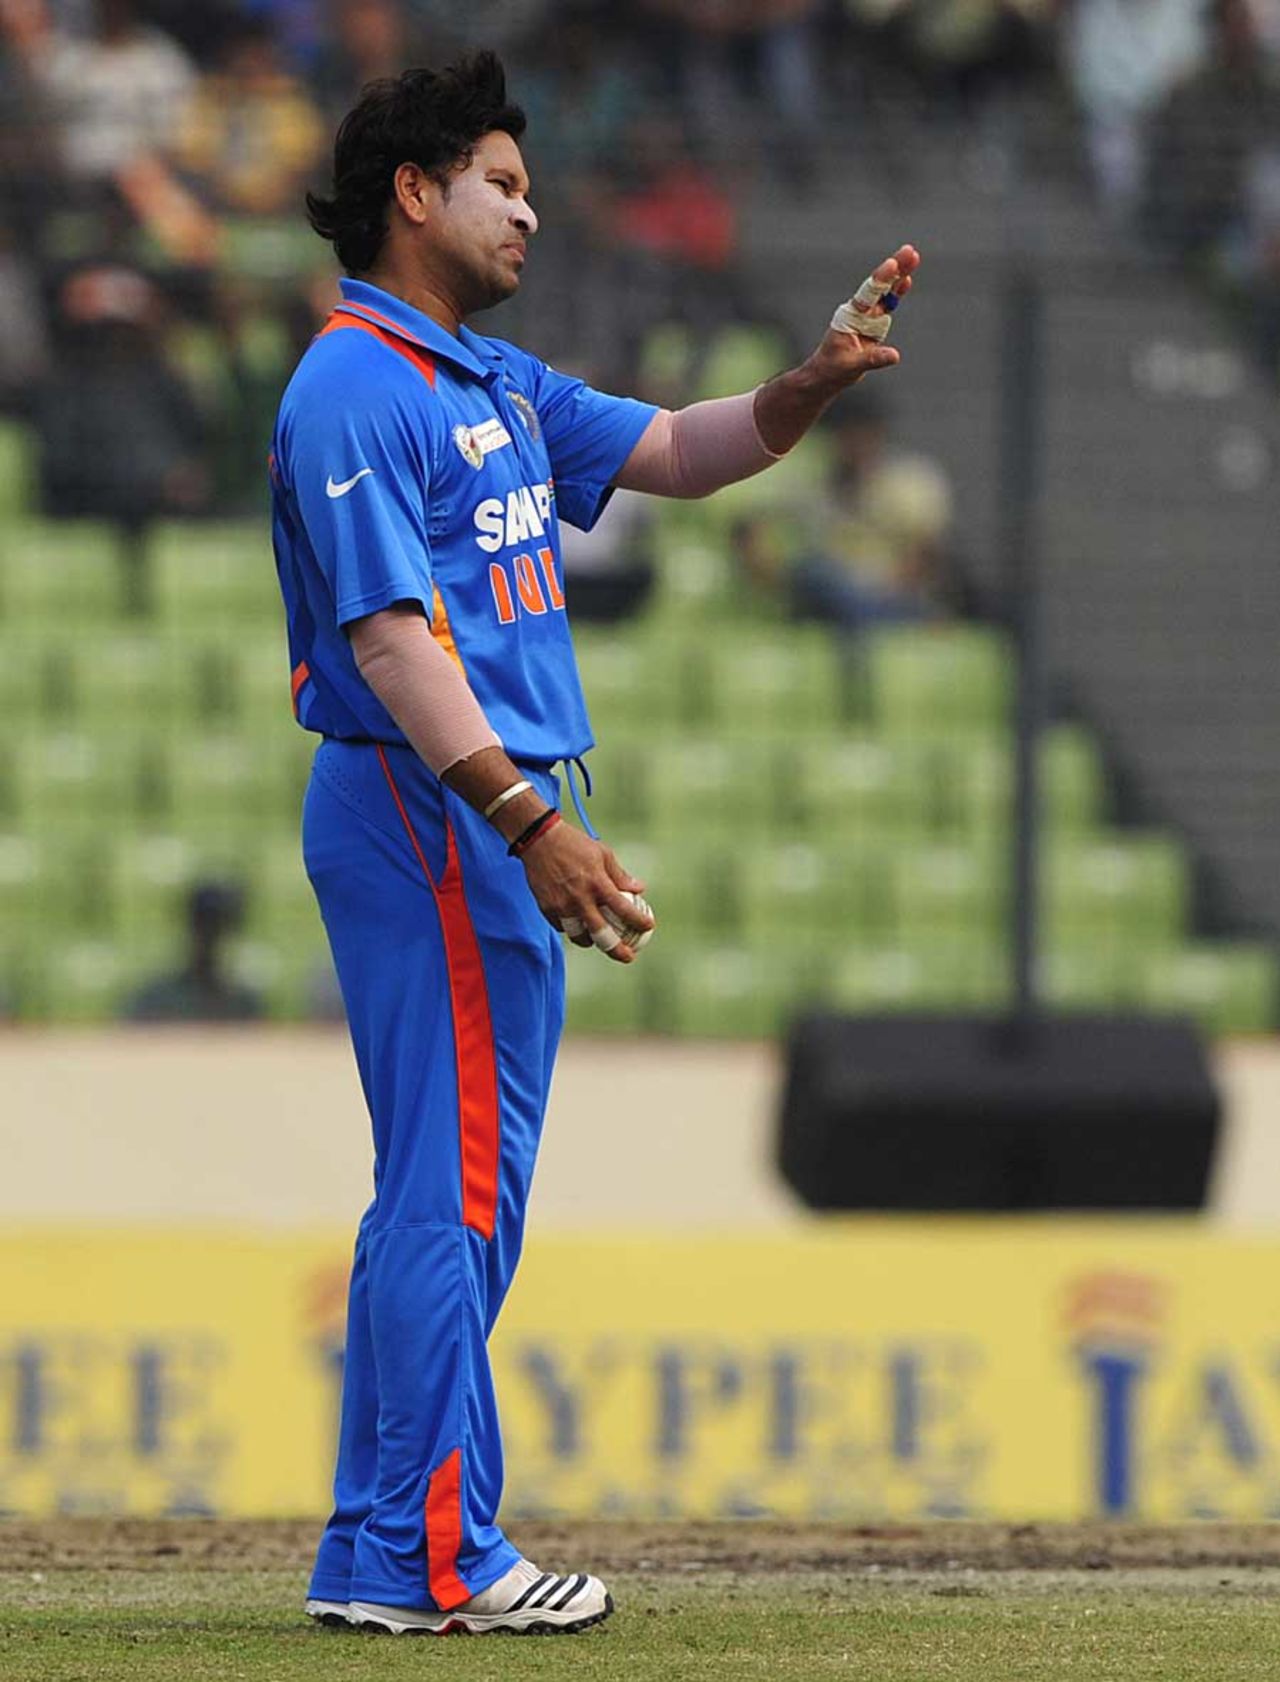 Sachin Tendulkar sets his field, India v Pakistan, Asia Cup, Mirpur, March 18, 2012